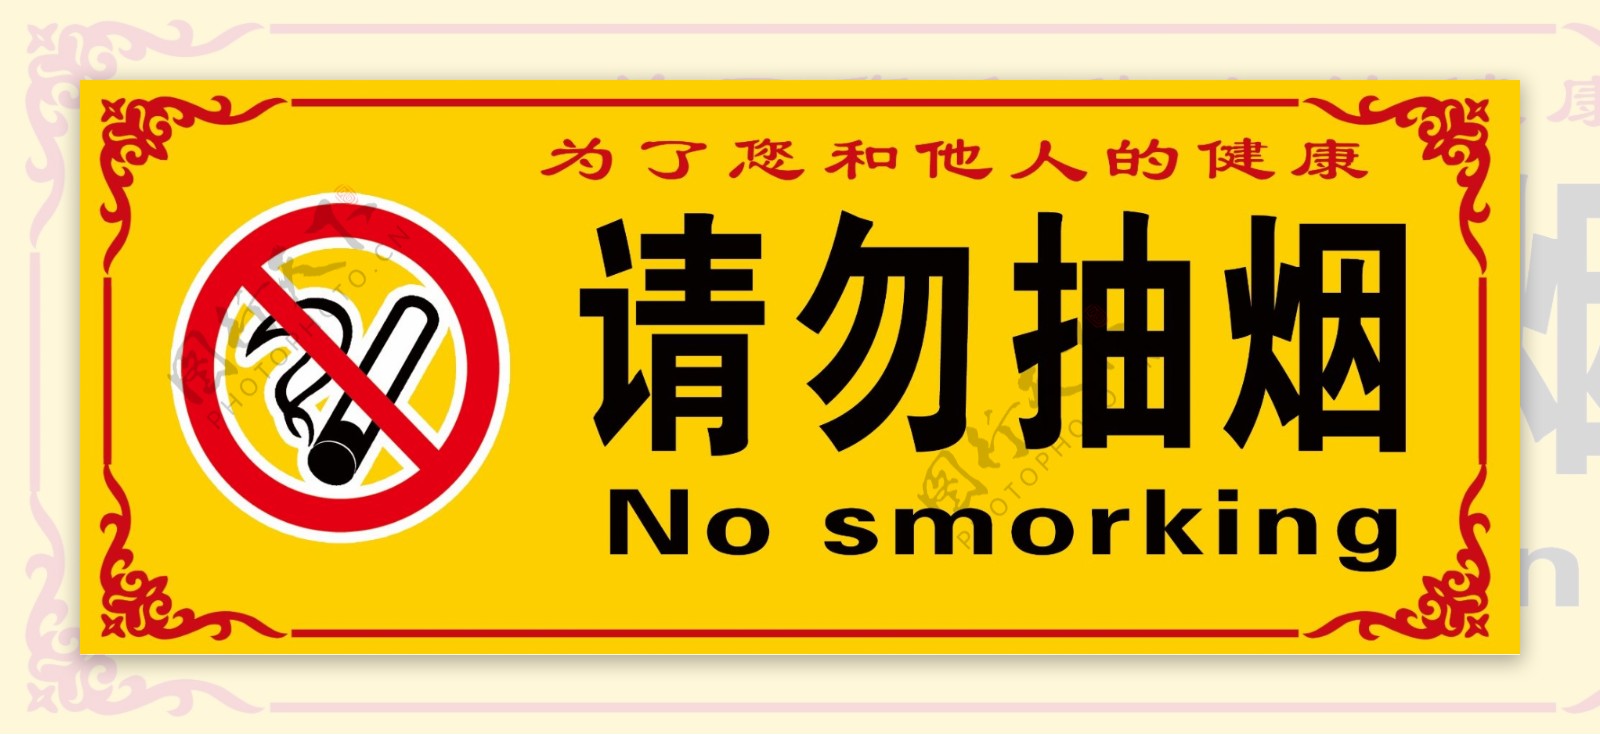 请勿抽烟